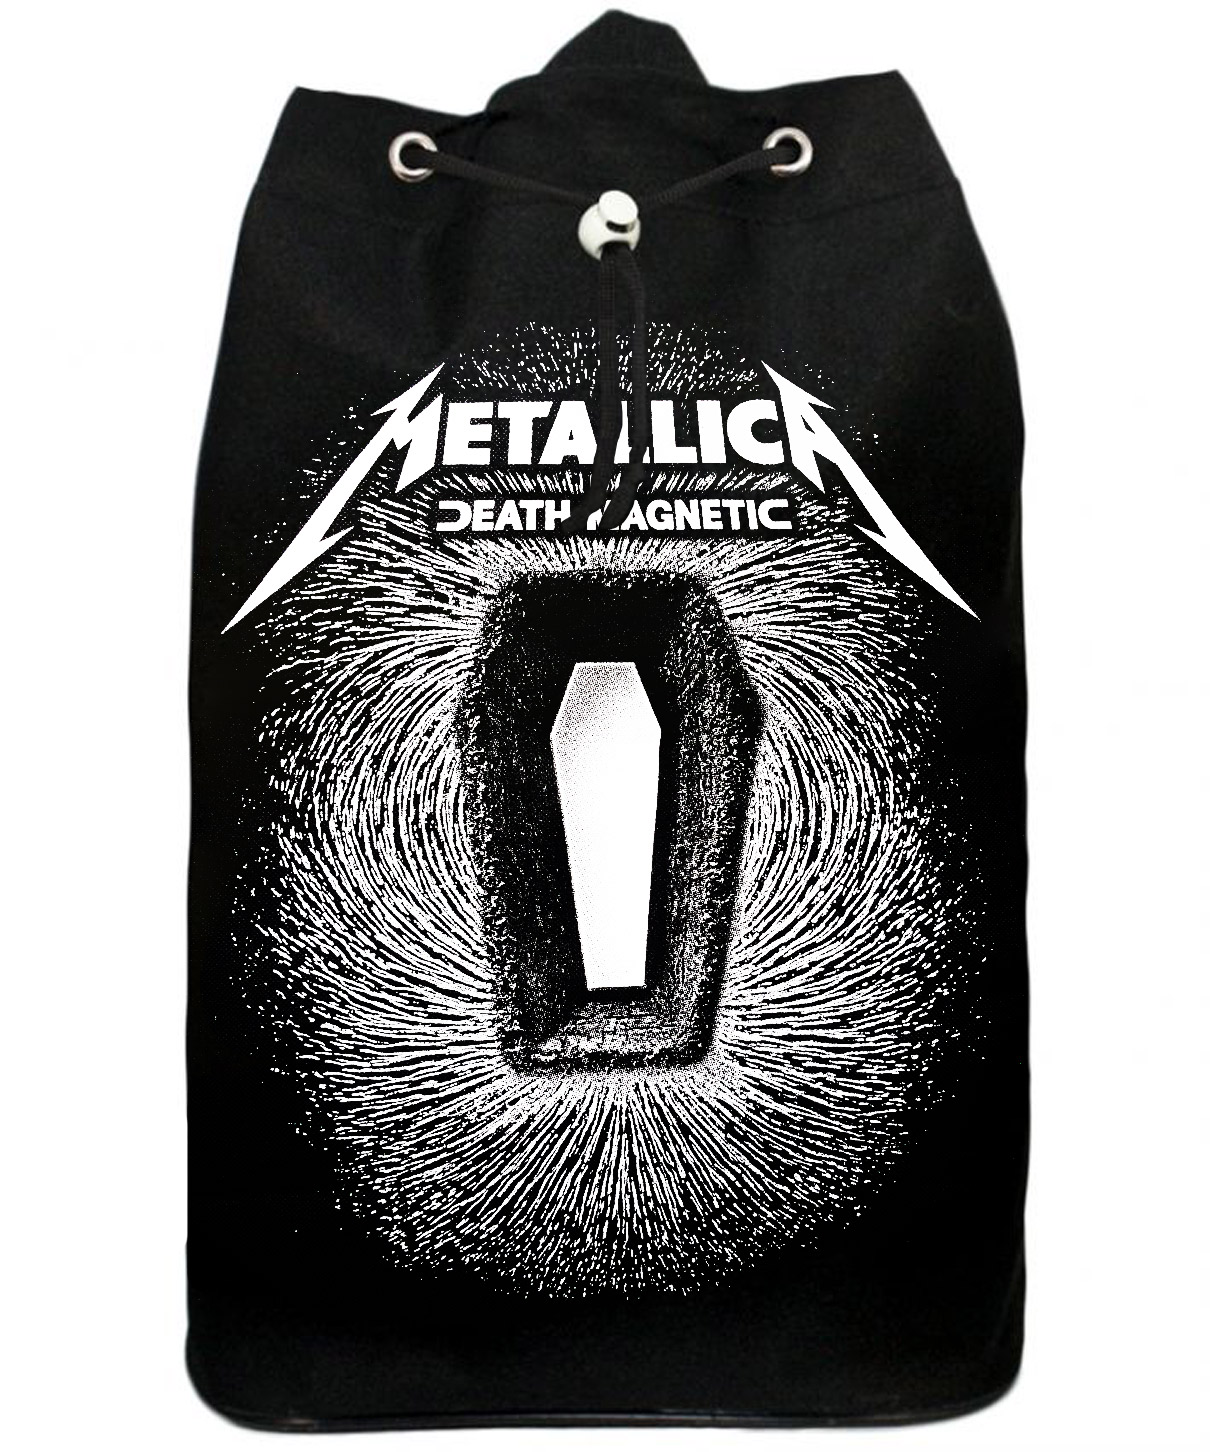 Торба Metallica текстильная - фото 2 - rockbunker.ru